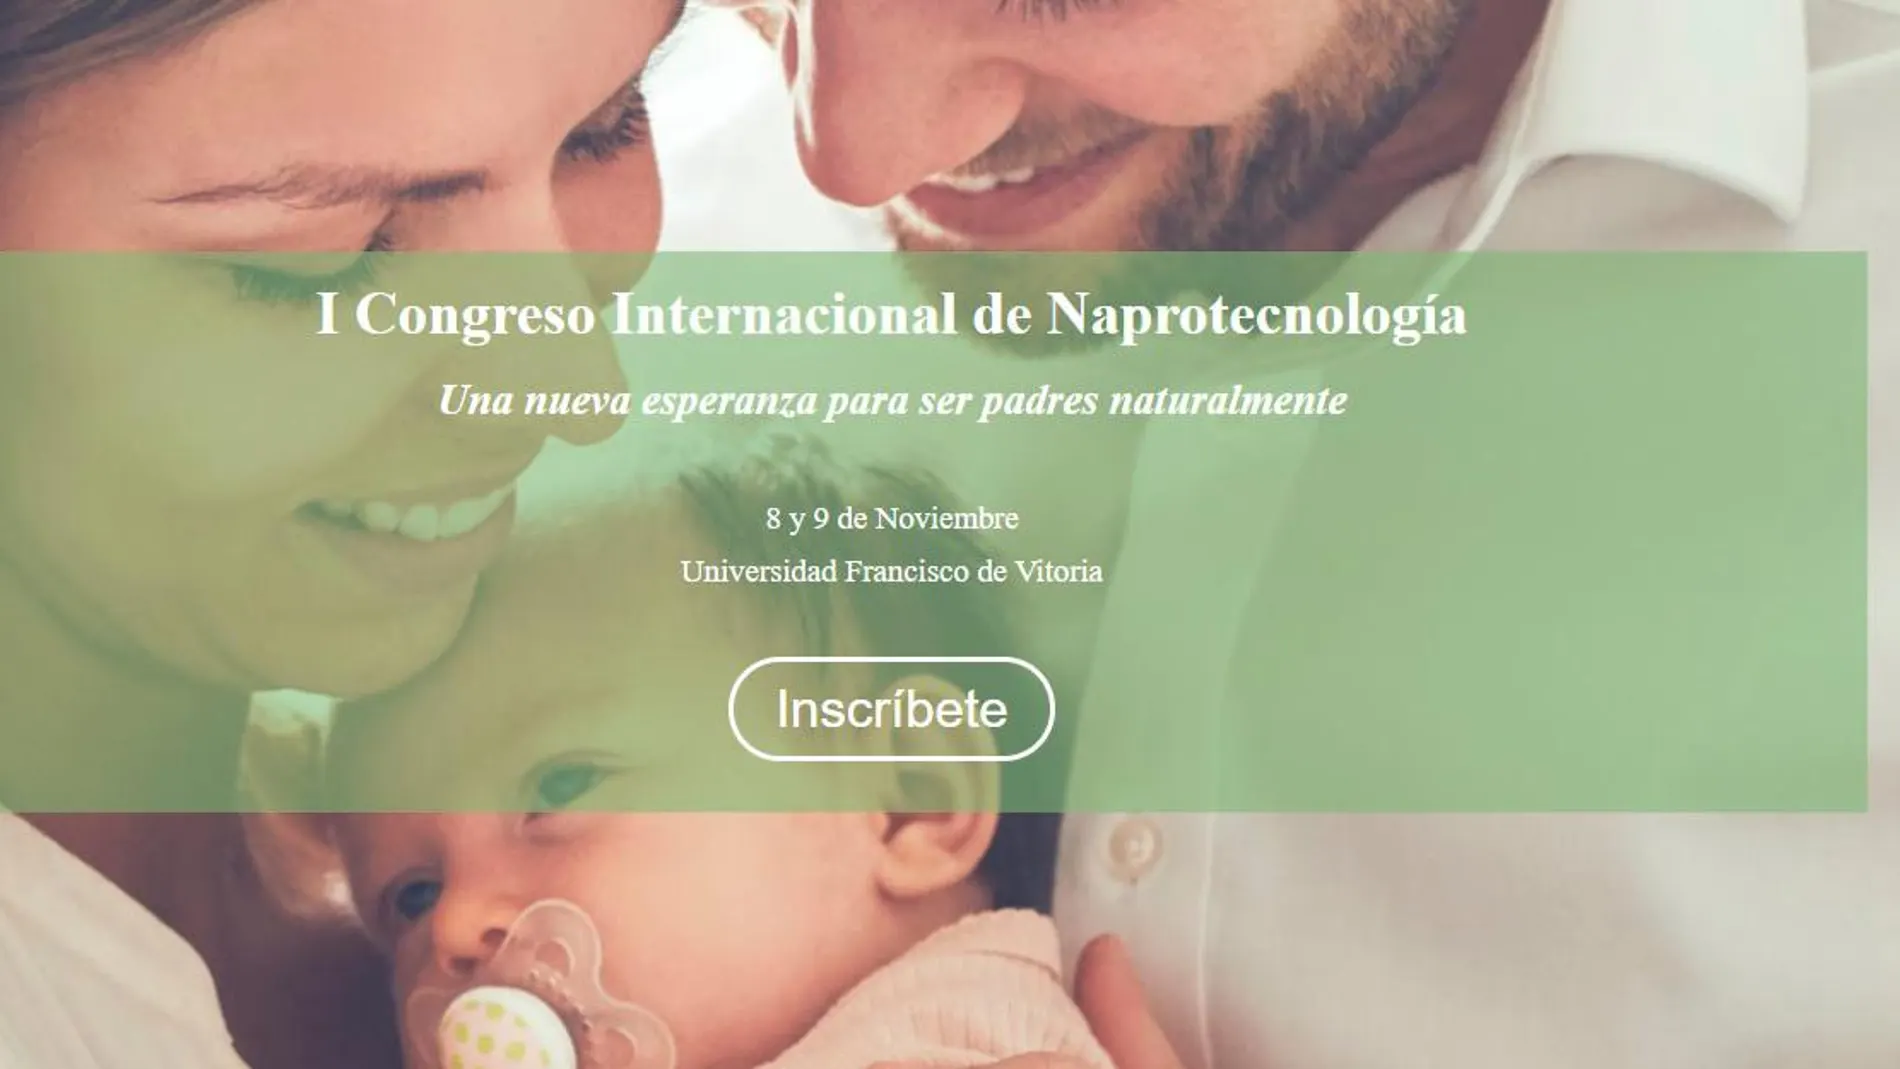 La Consejería de Sanidad inaugurará el I Congreso Internacional de Naprotecnología